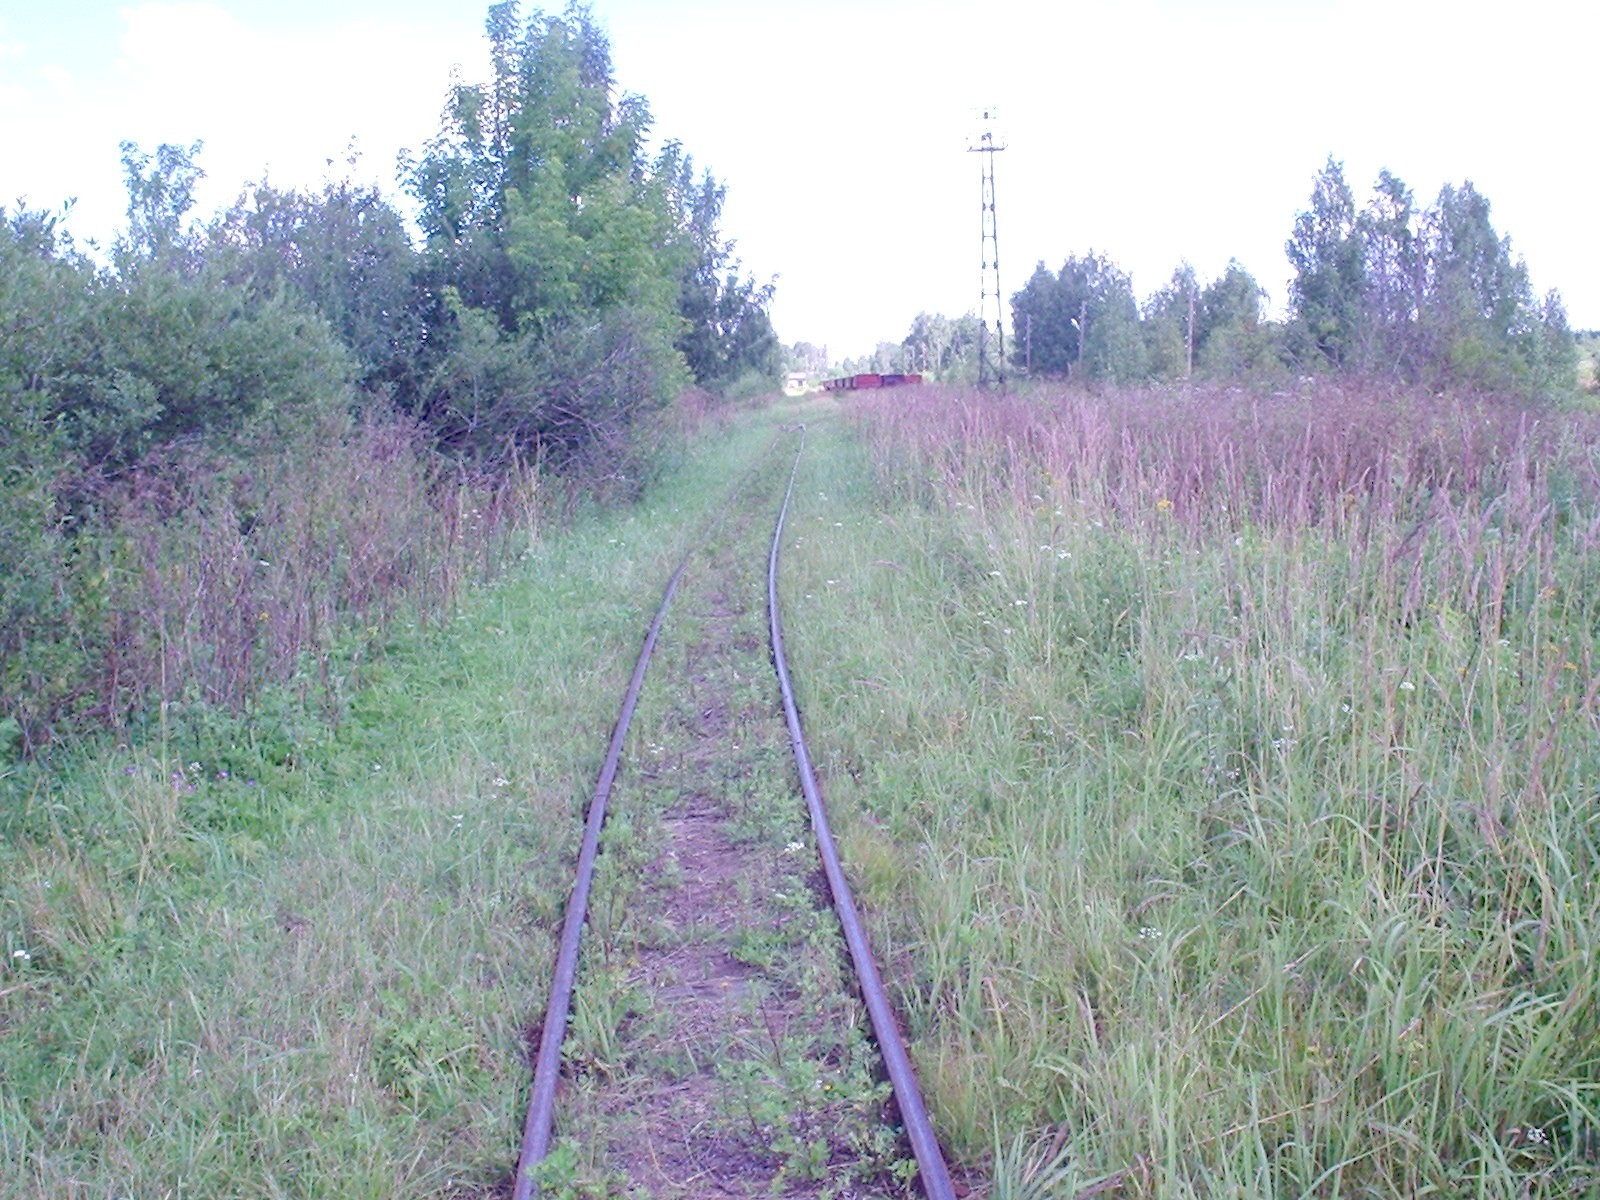 Узкоколейная железная дорога Васильевского предприятия промышленного железнодорожного транспорта  — фотографии, сделанные в 2005 году (часть 10)